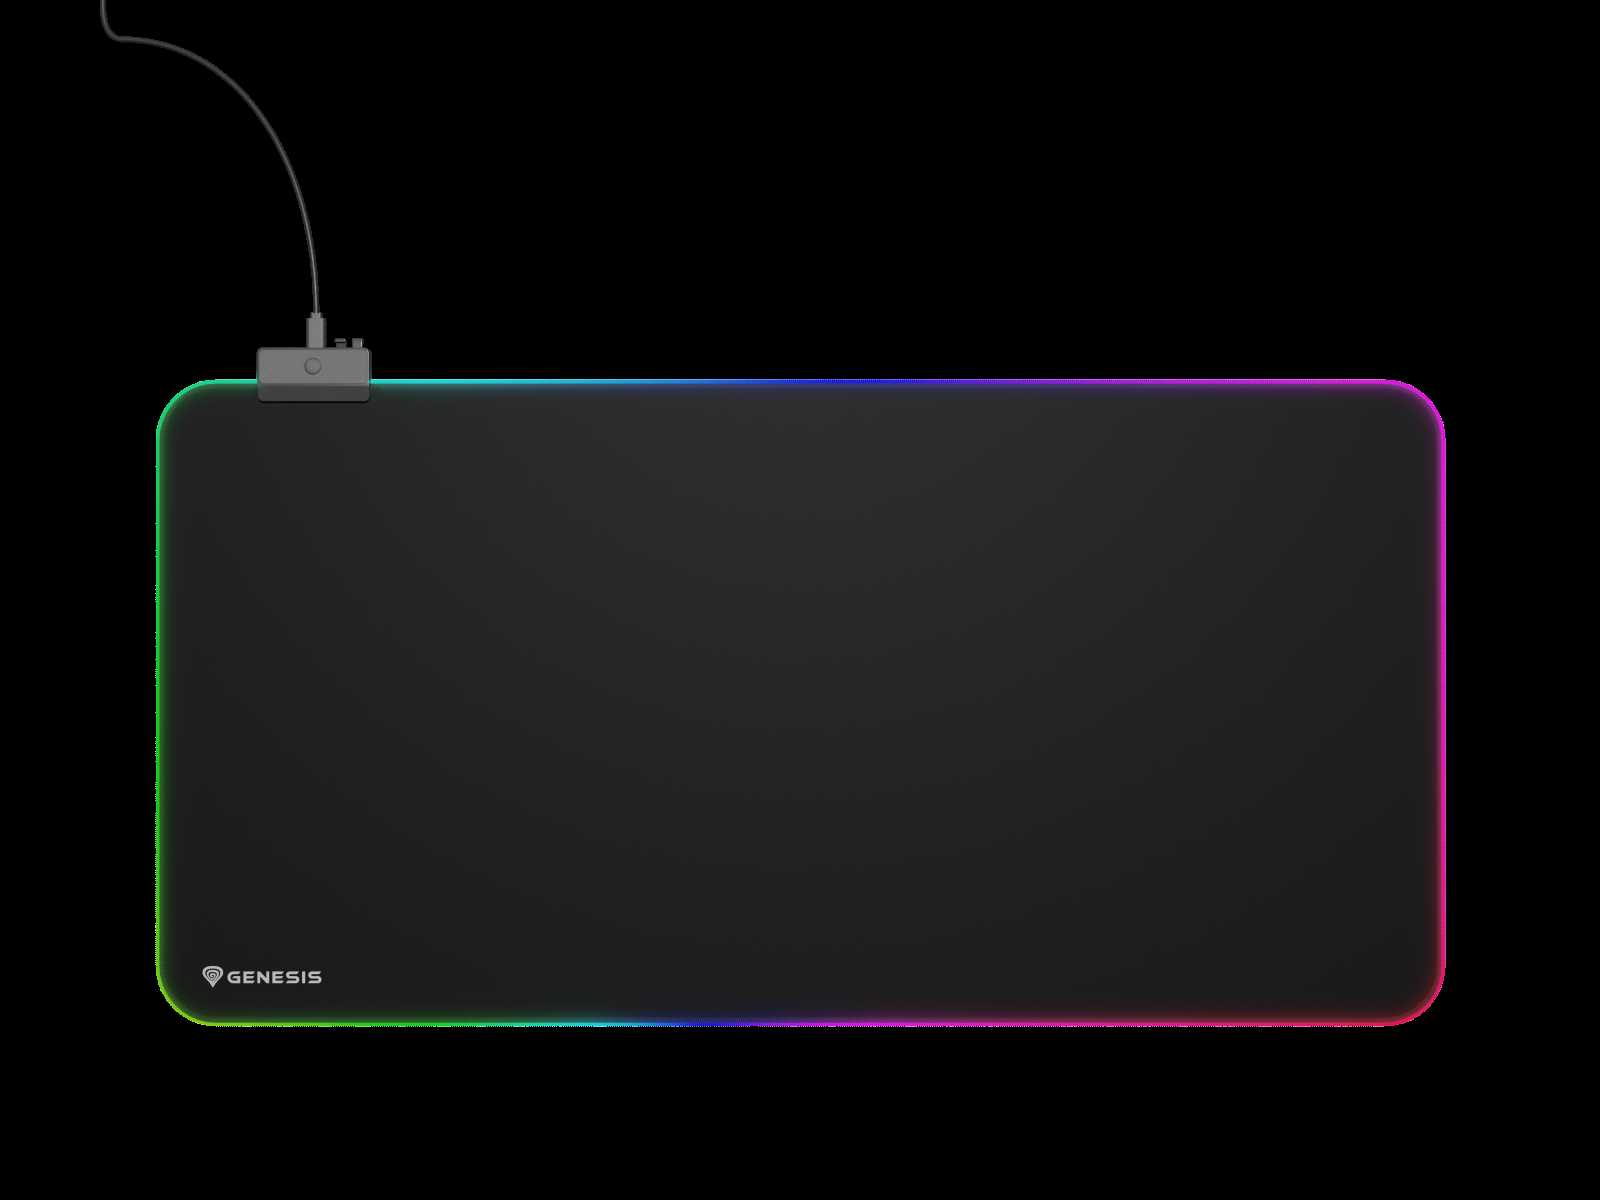 Podložka pod myš Genesis Boron 500 XXL s RGB podsvícením pro nadšené hráče počítačových her